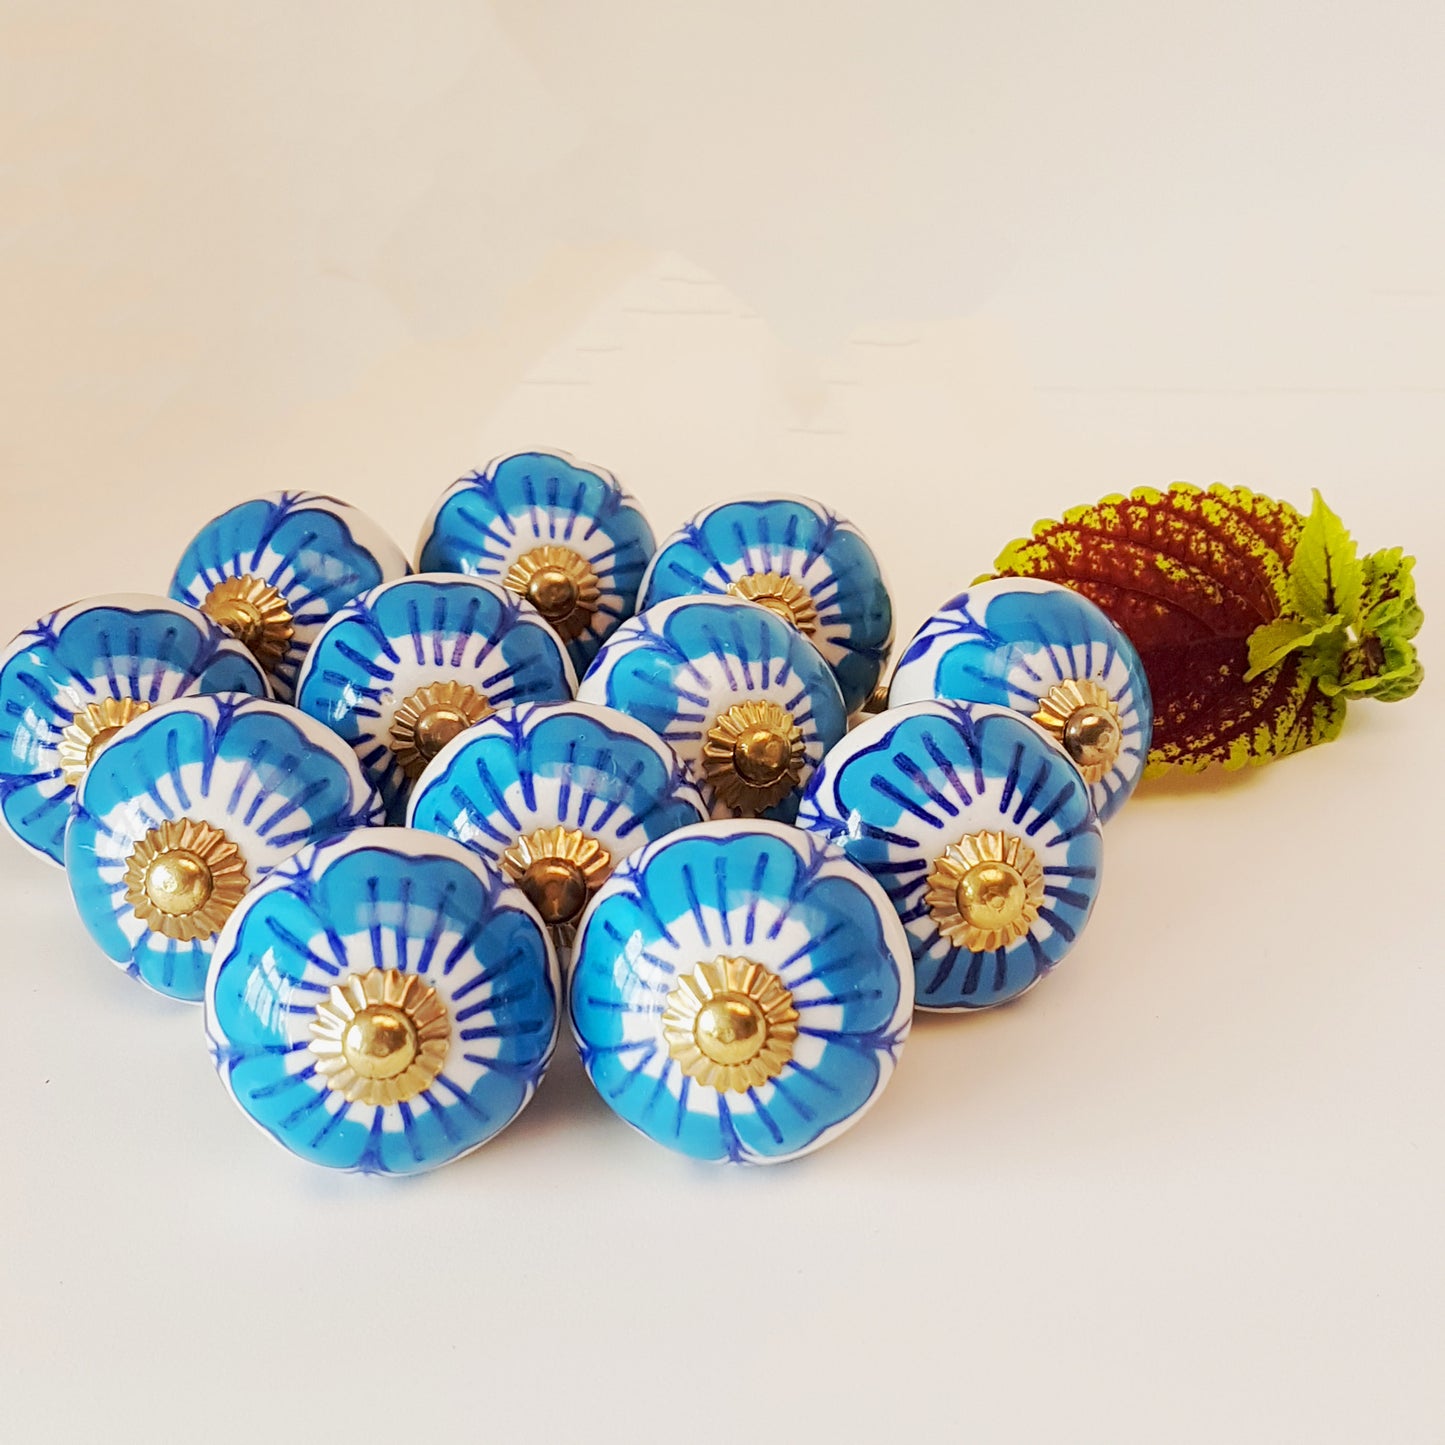 Ensemble de 12 boutons d'armoire à fleurs bleues et blanches avec quincaillerie dorée.